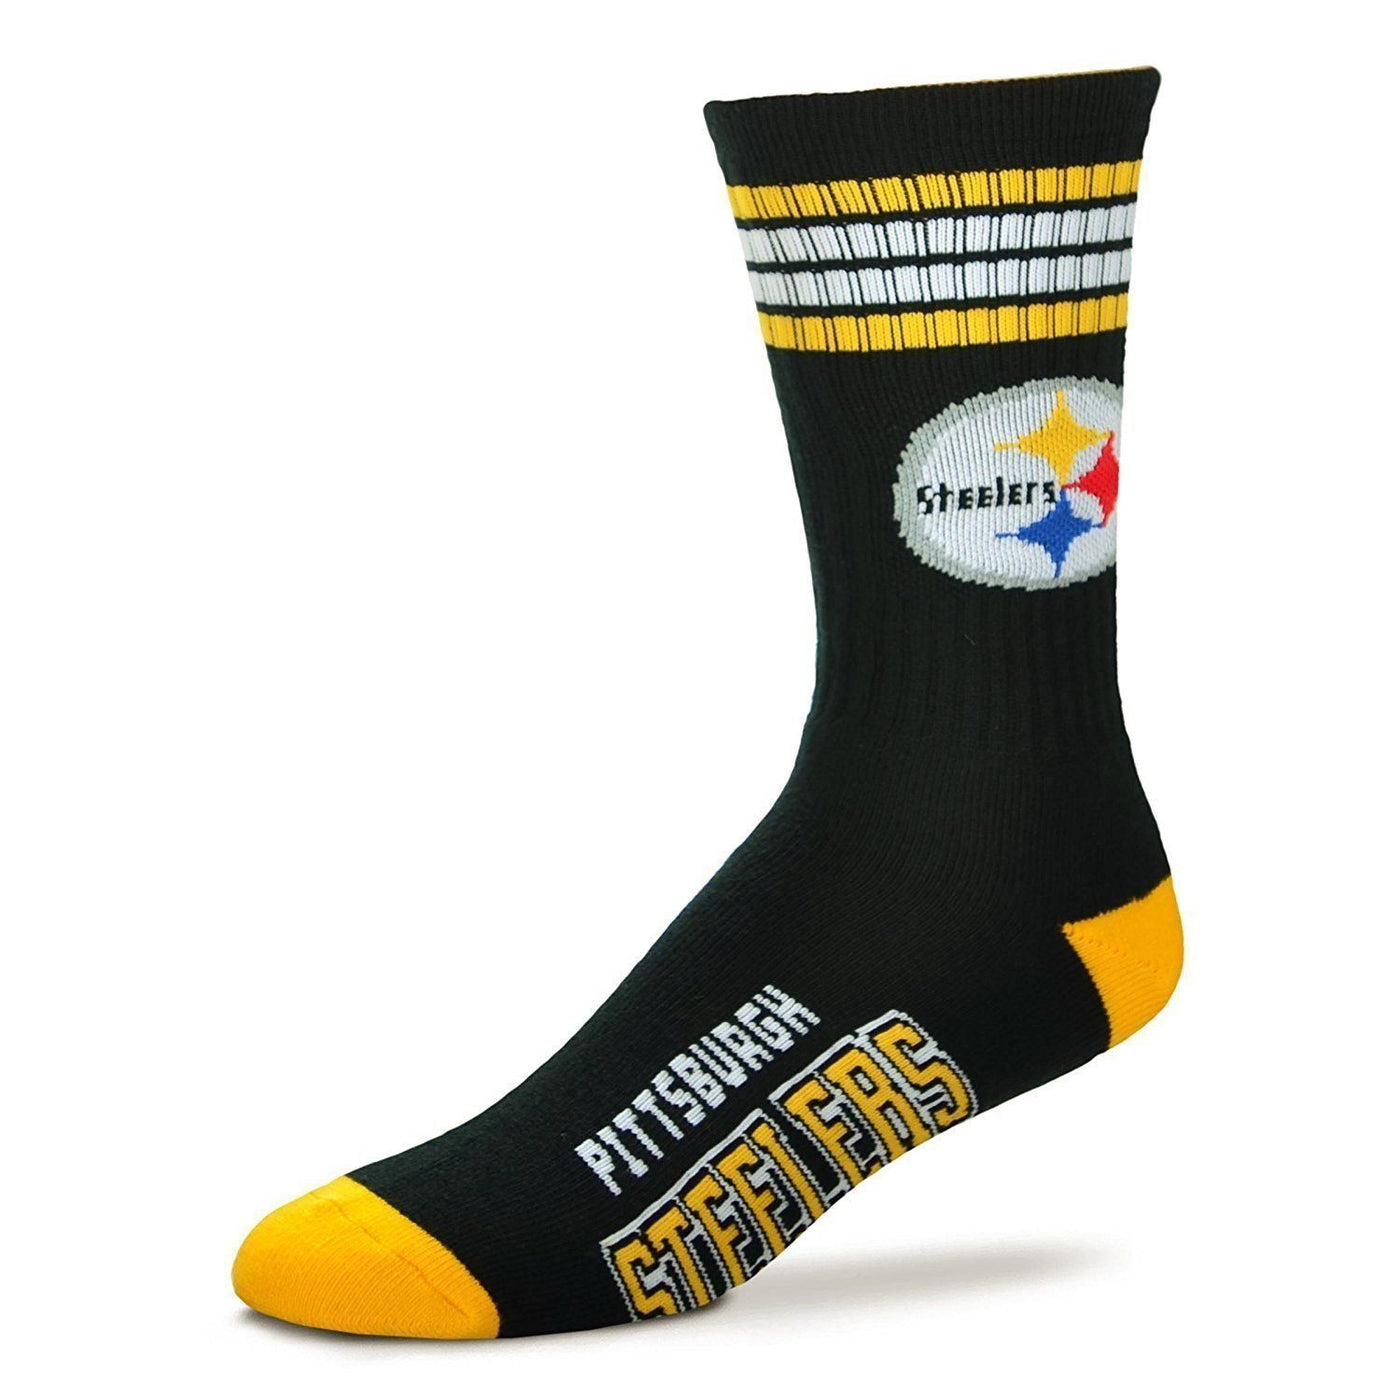 For Bare Feet - Pittsburgh Steelers NFL Crew Socks | Men's - Knock Your Socks Off